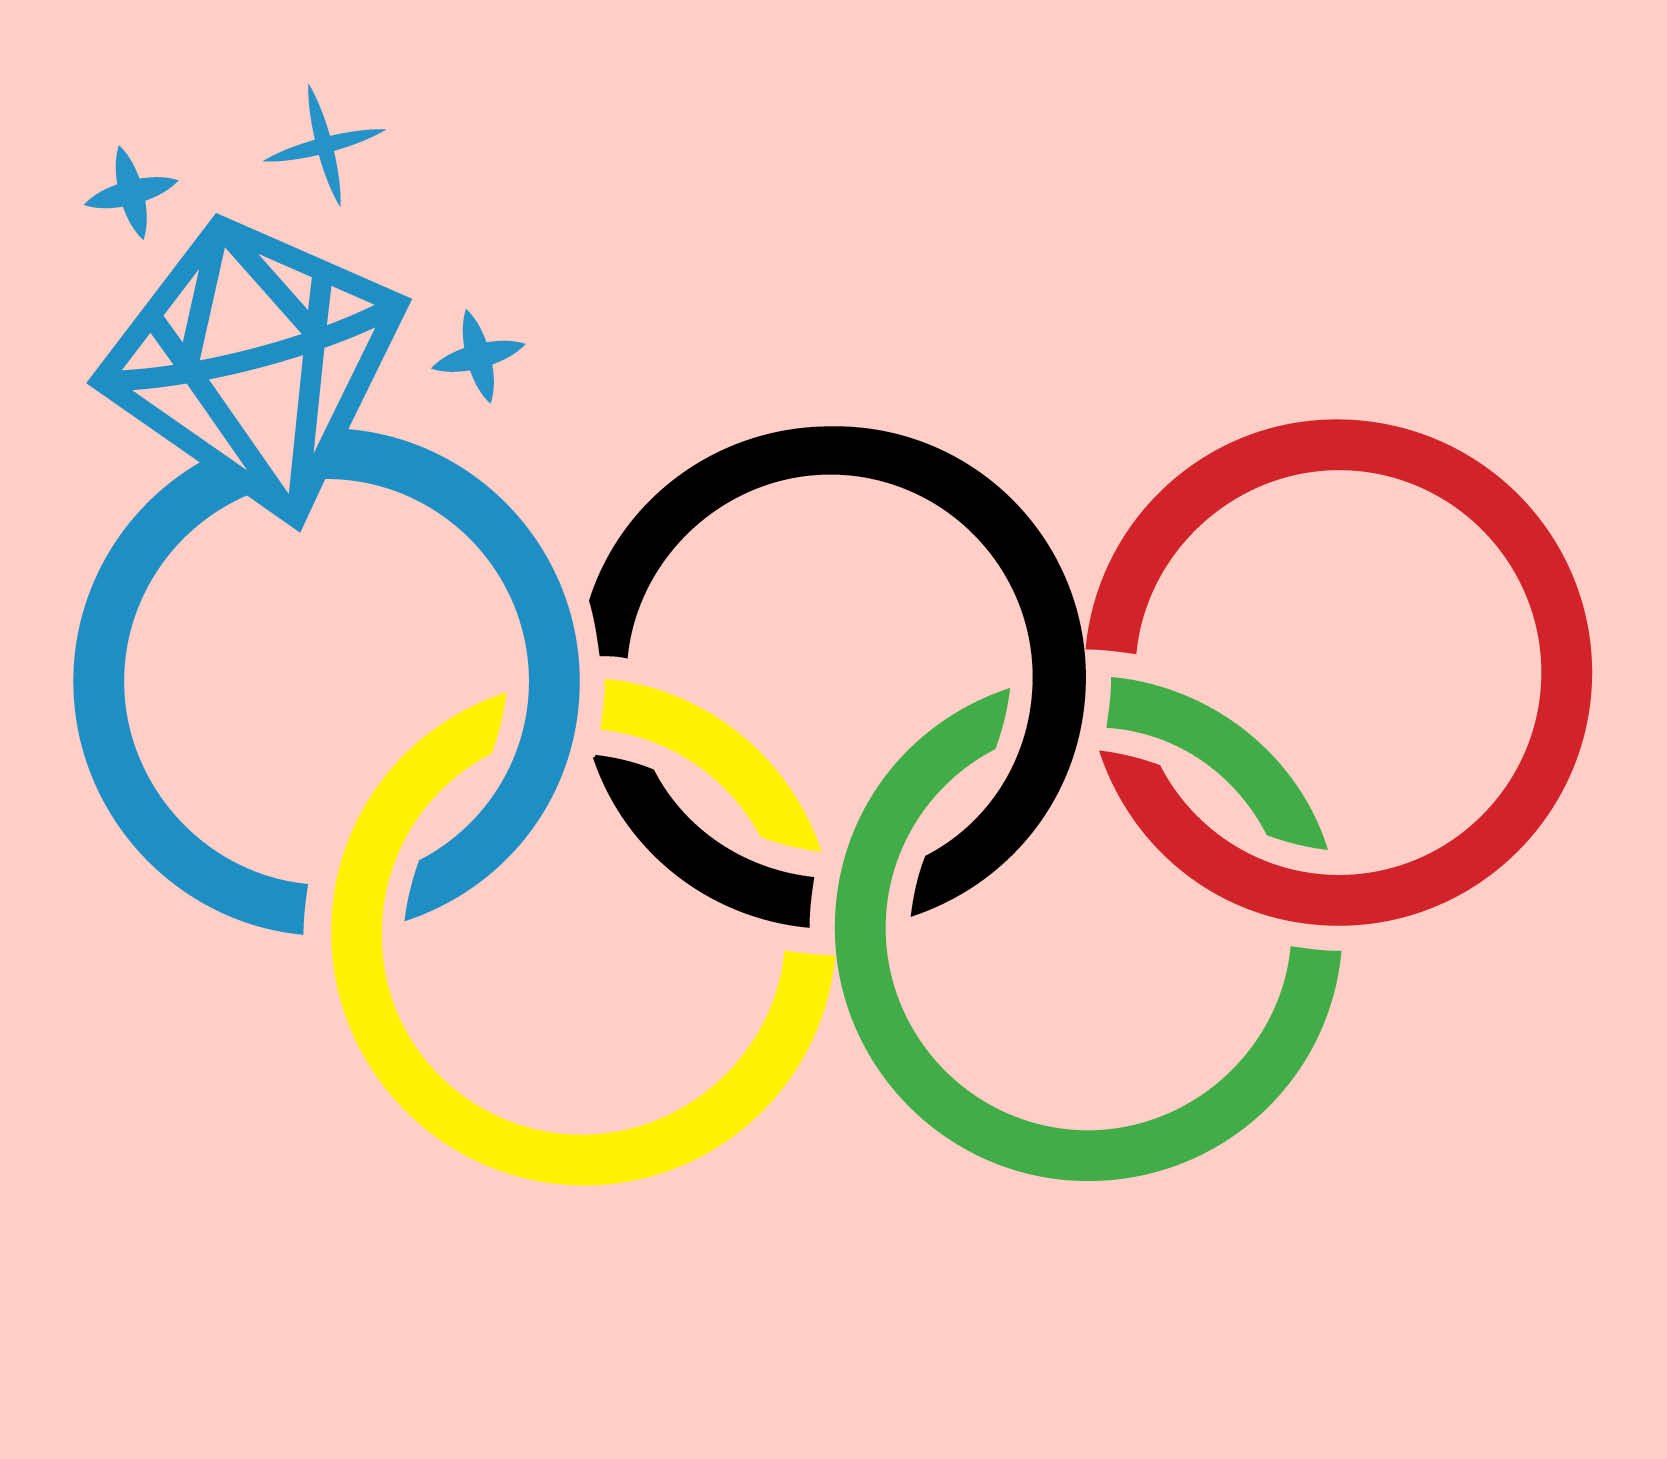 Олимпийские игры рисунок легко. Олимпийские игры картинки для детей. Олимпийские кольца рисунок. Рисунок на тему Олимпийские игры. Олимпийские кольца картинки.